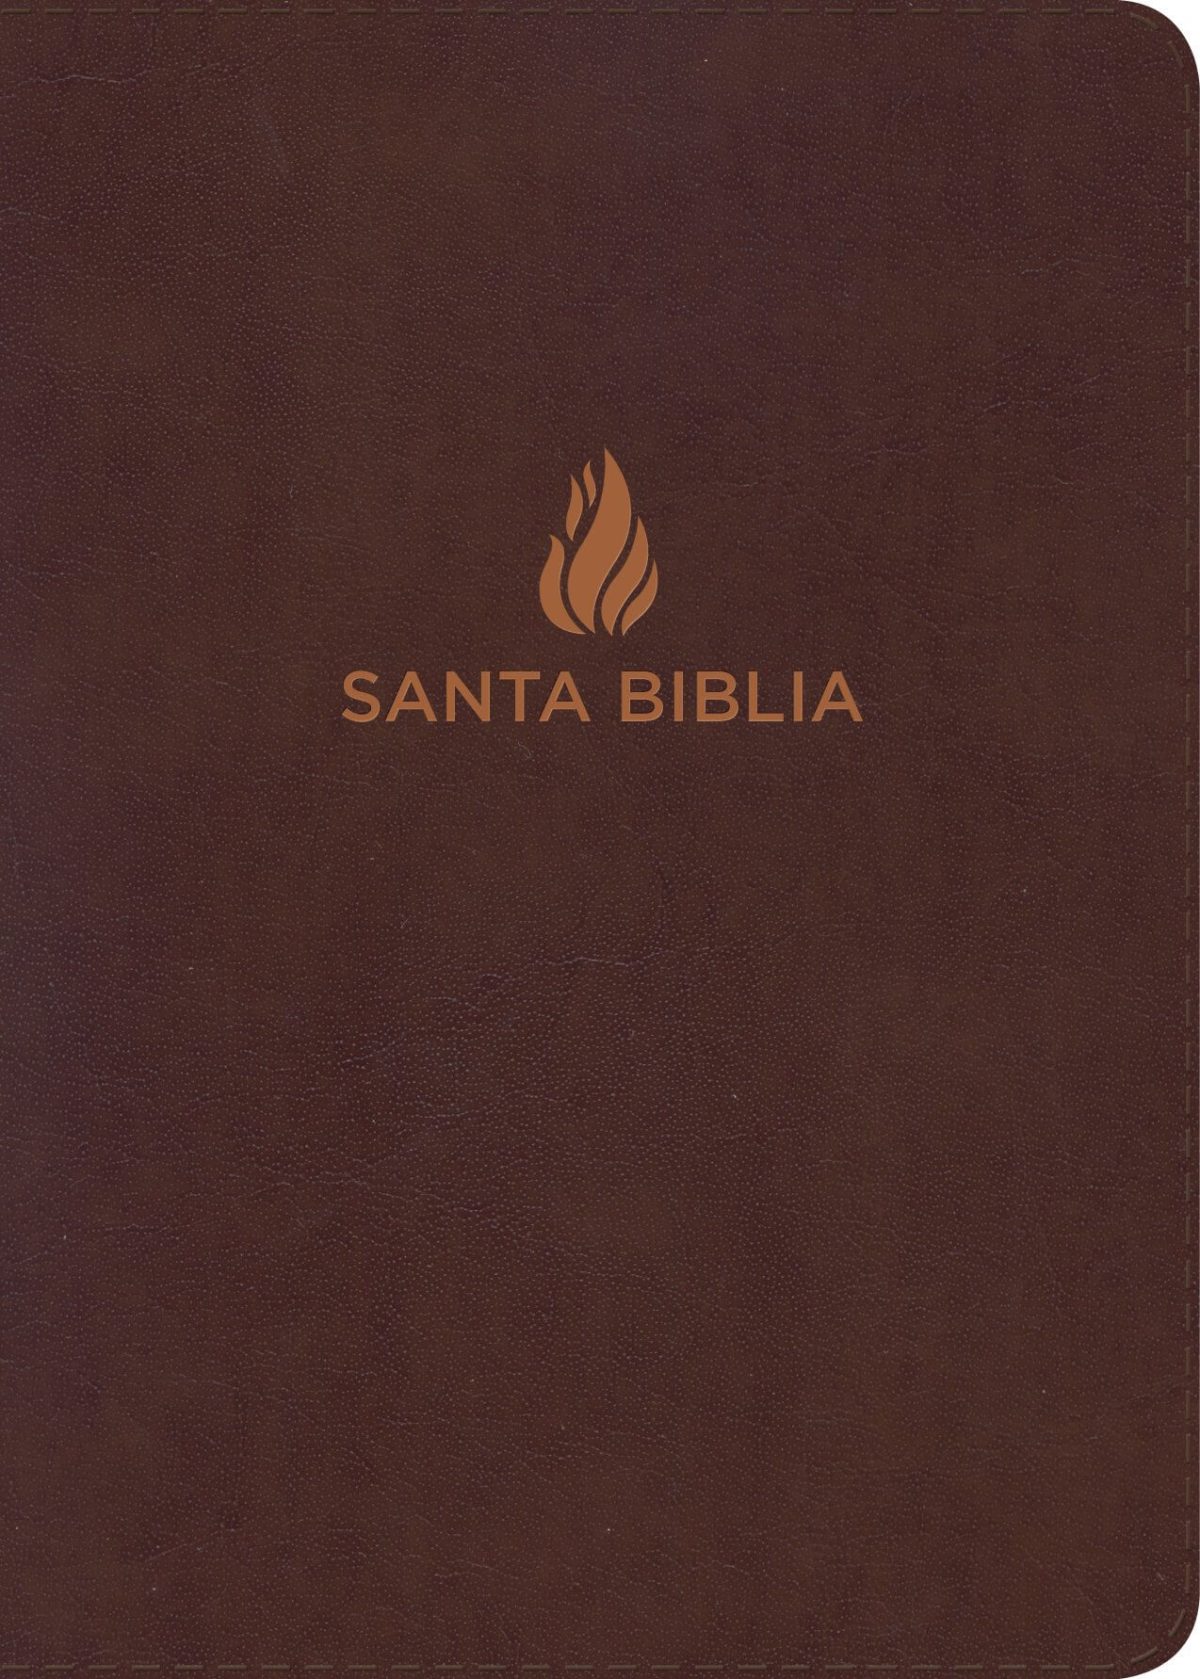 RVR 1960 Biblia Compacta Letra Grande marrón